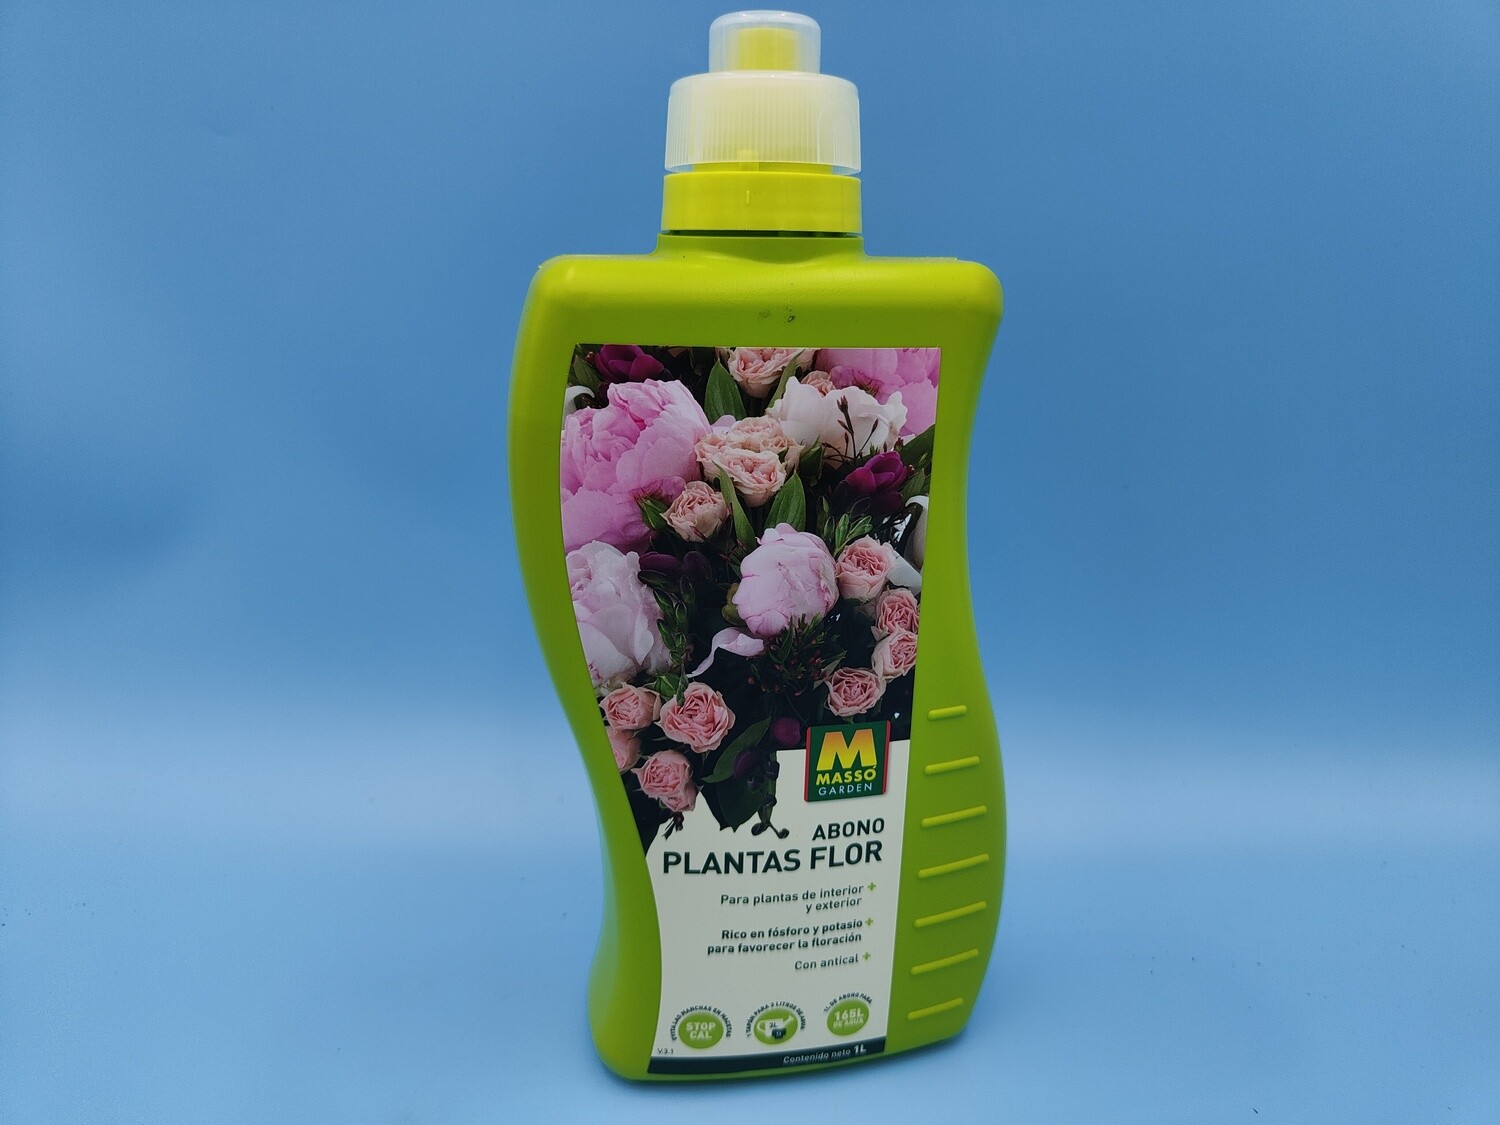 "AmaPlant Abono Plantas Flor" liquido para plantas de interior y exterior, rico en fósforo y potasio para favorecer la floracion, con antical 1 litro